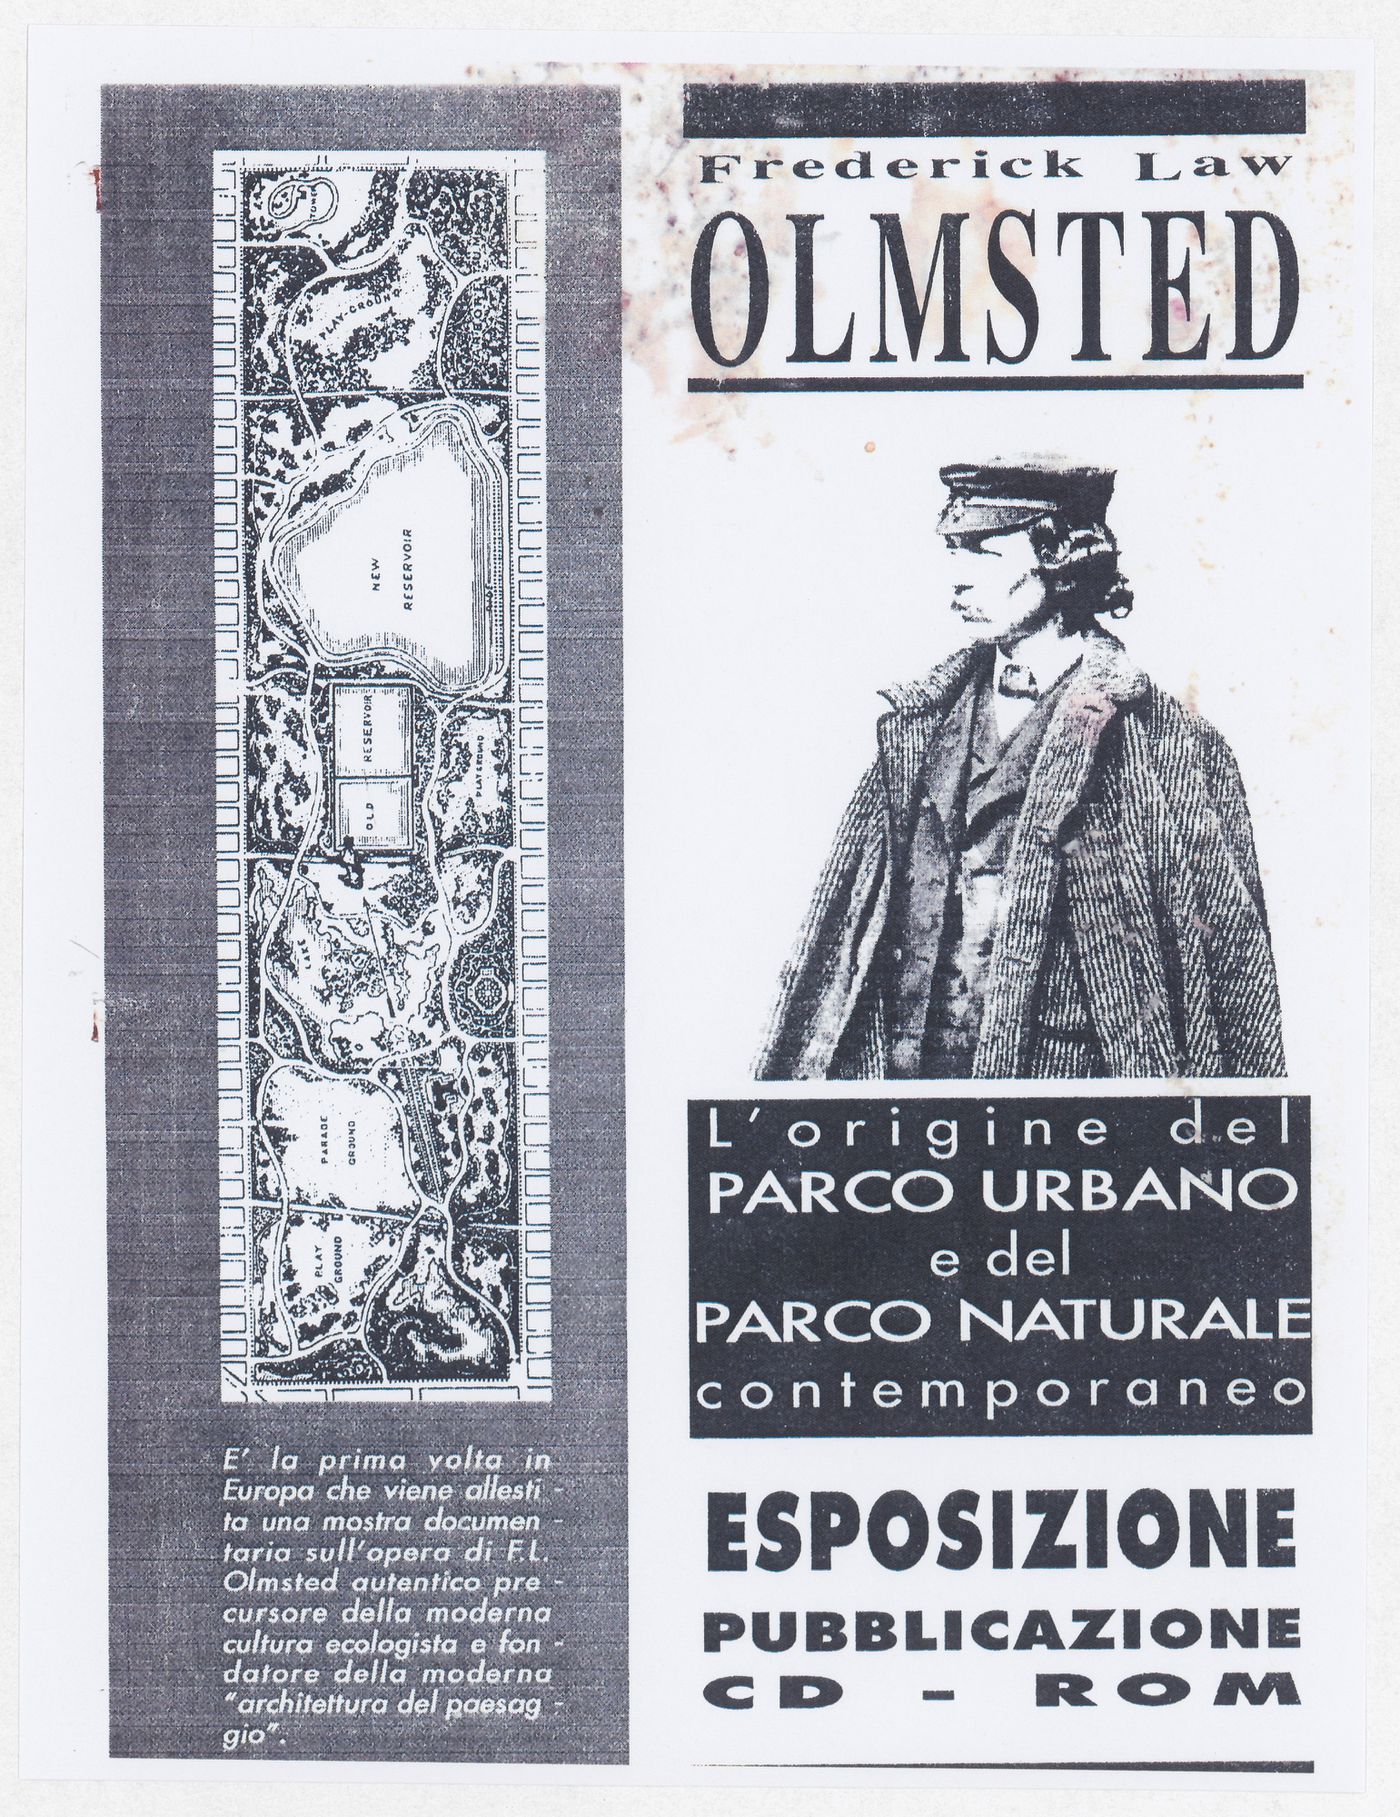 Promotional materials for the exhibition Olmsted: L'origine del parco urbano e del parco naturale contemporaneo